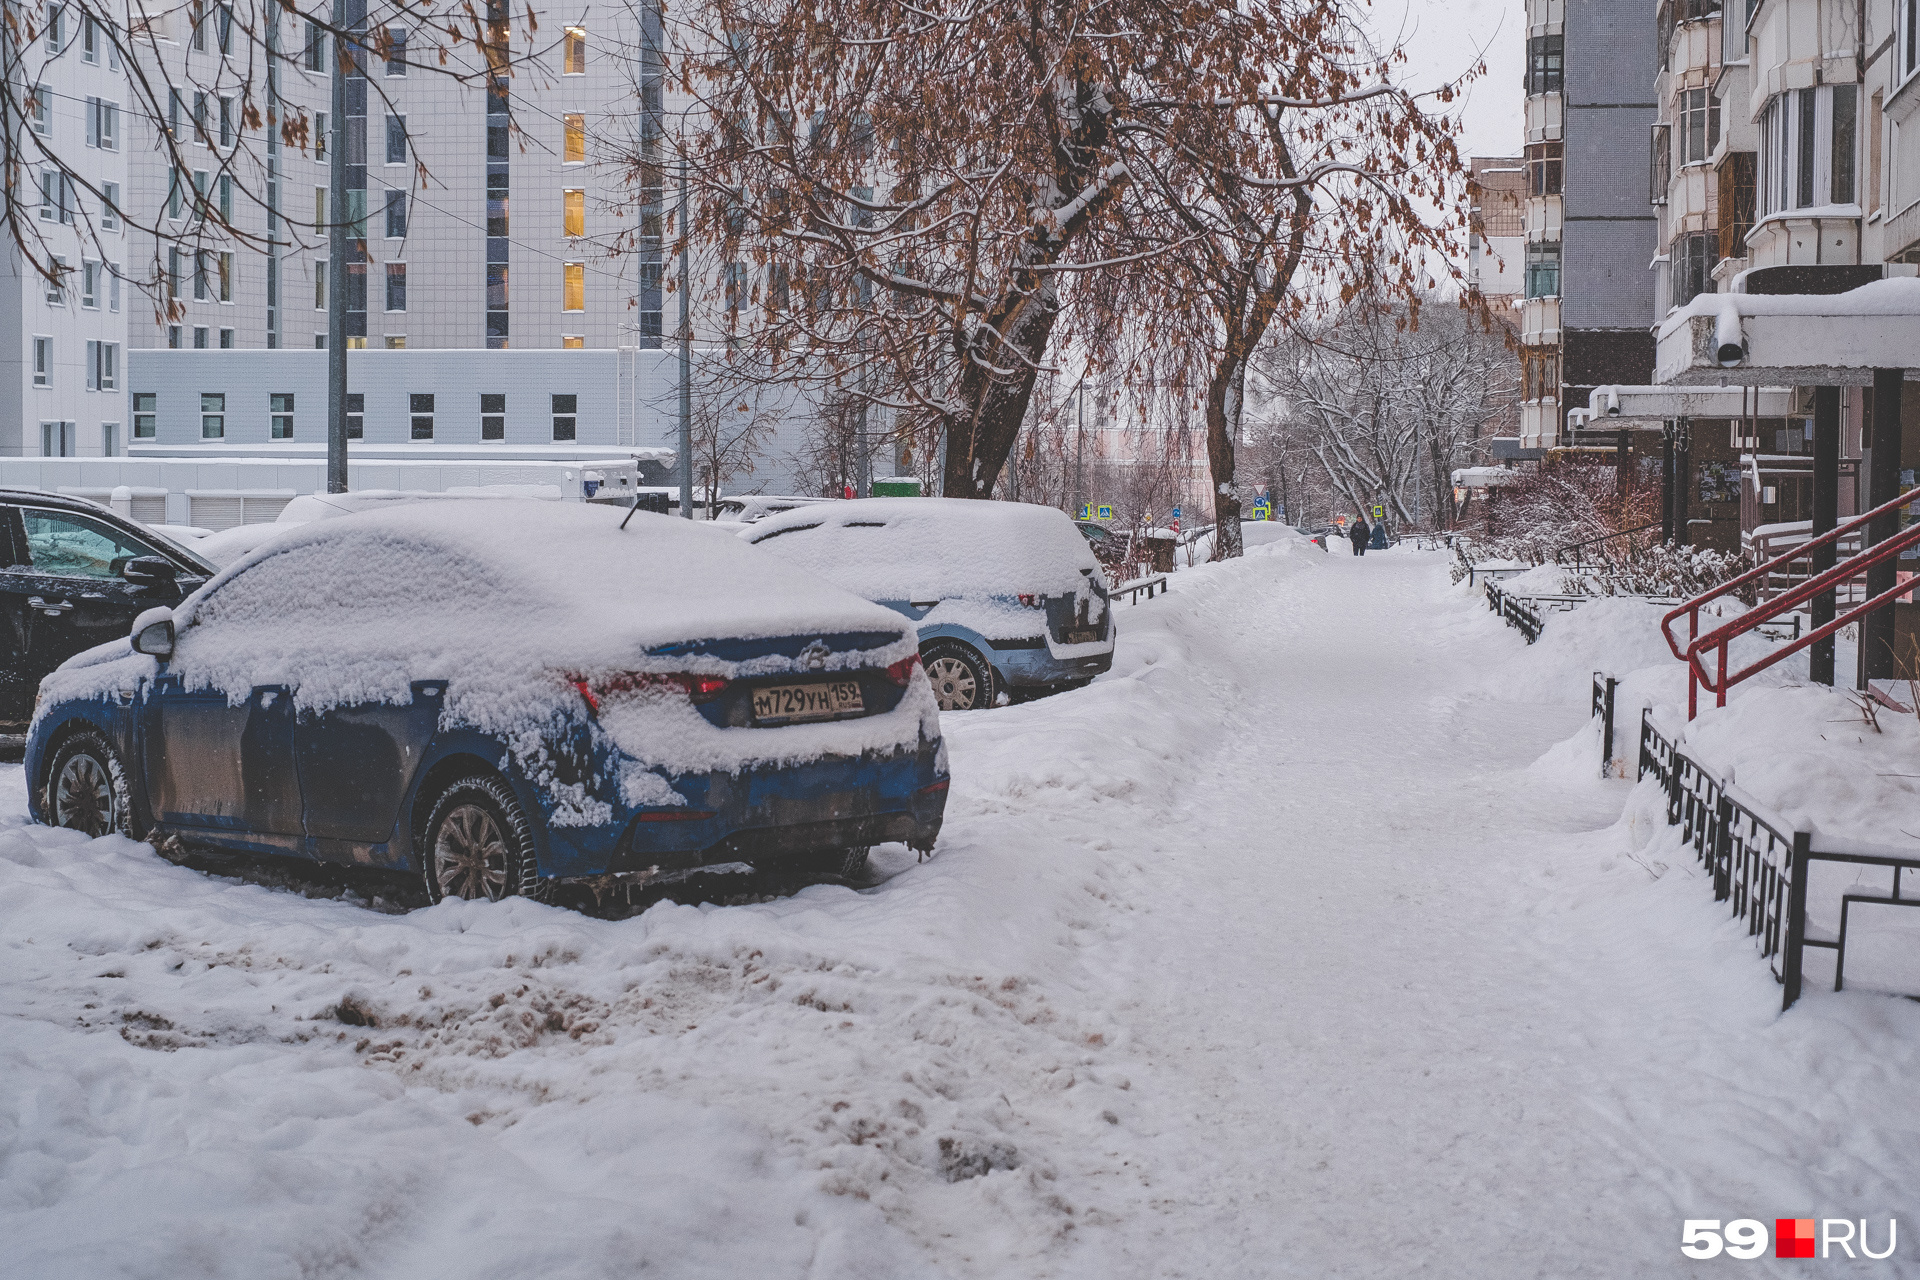 Автомобилистам сейчас не позавидуешь, чистить машину от снега — дело не из приятных